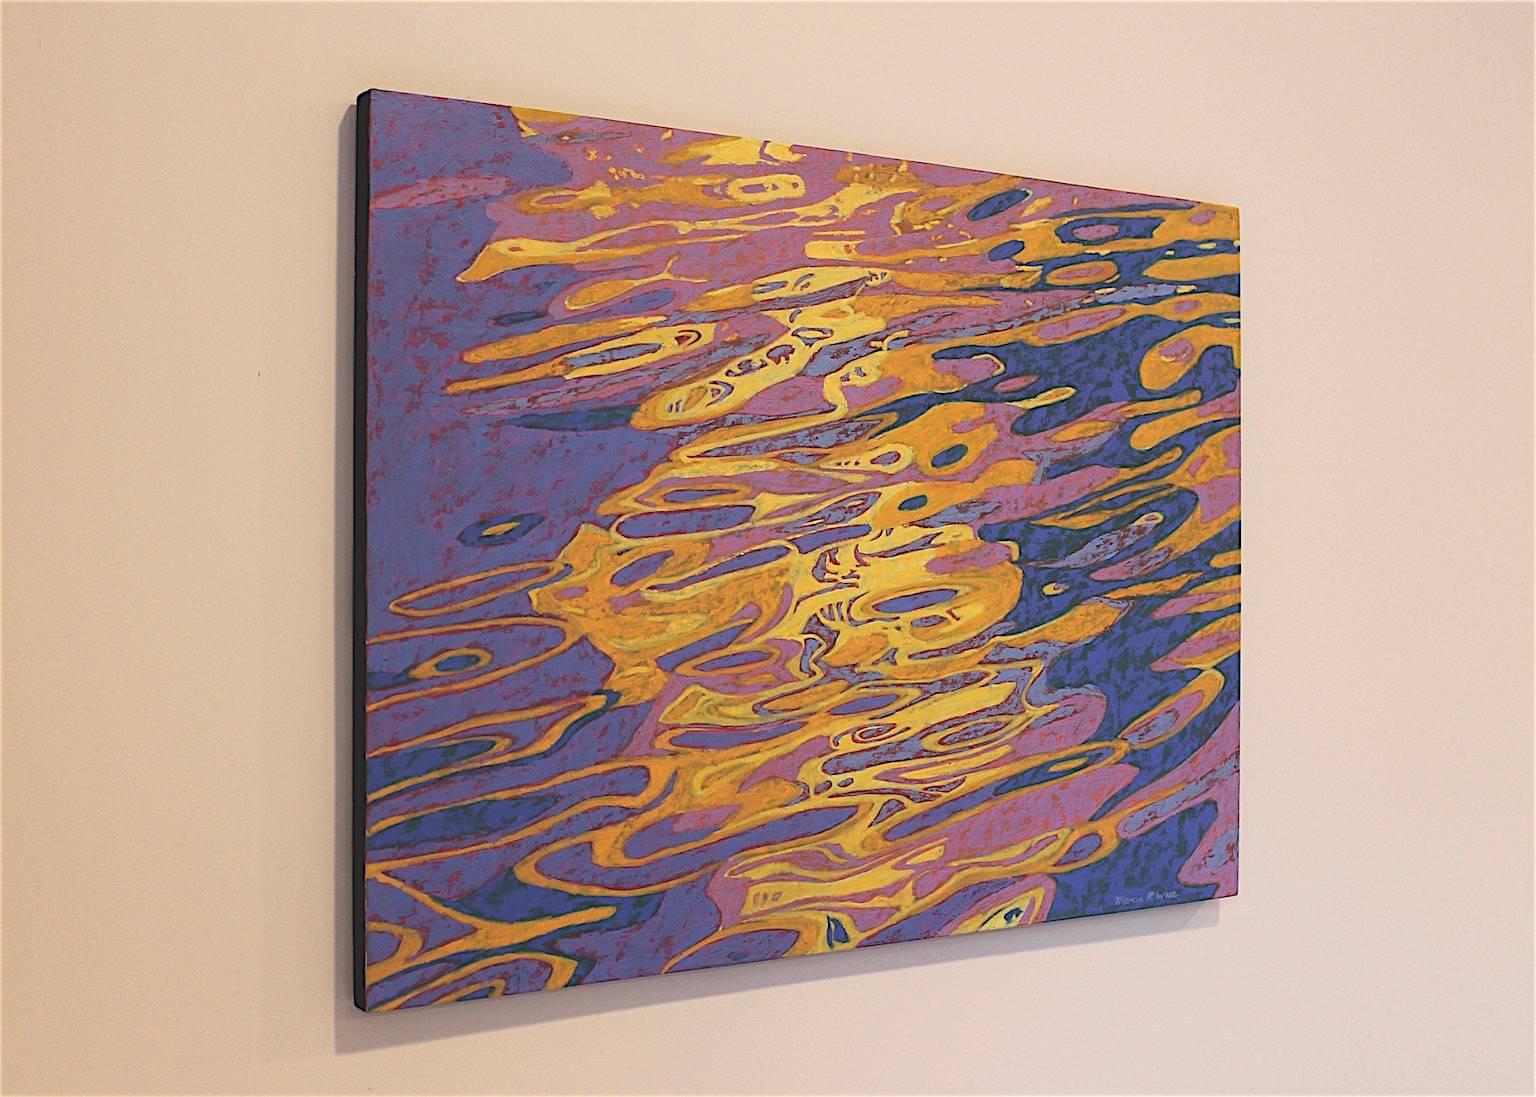 « Abstract Reflections », eau, bleu, jaune, orange, rose, peinture à l'huile - Painting de Marcia Wise